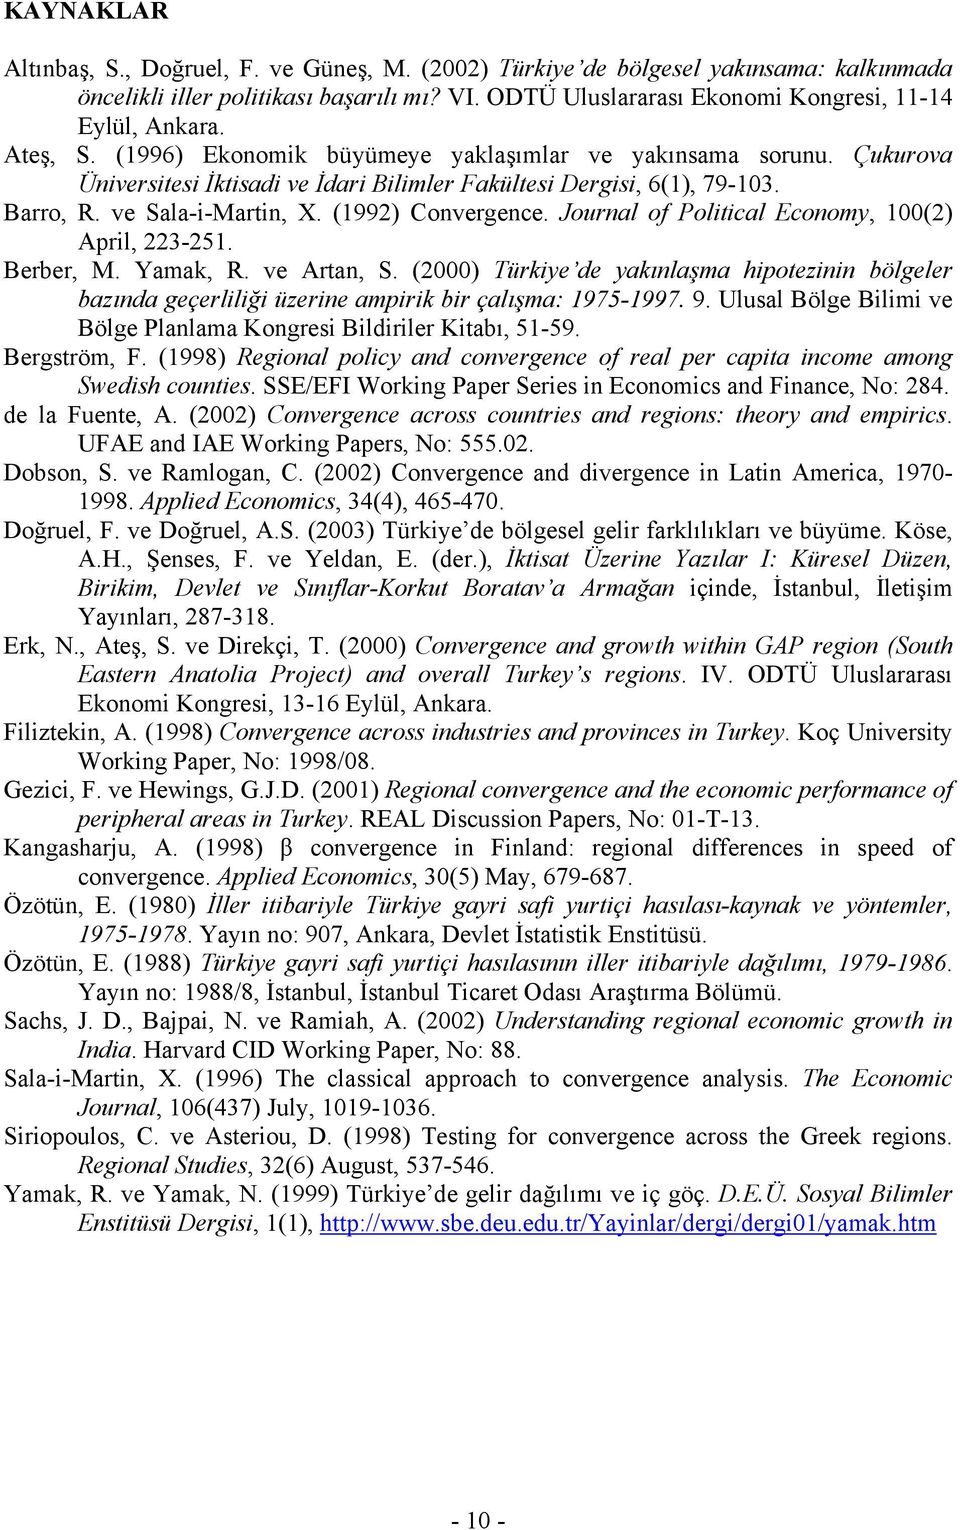 Journal of Poliical Economy, 100(2) April, 223-251. Berber, M. Yamak, R. ve Aran, S. (2000) Türkiye de yakınlaşma hipoezinin bölgeler bazında geçerliliği üzerine ampirik bir çalışma: 1975-1997. 9.